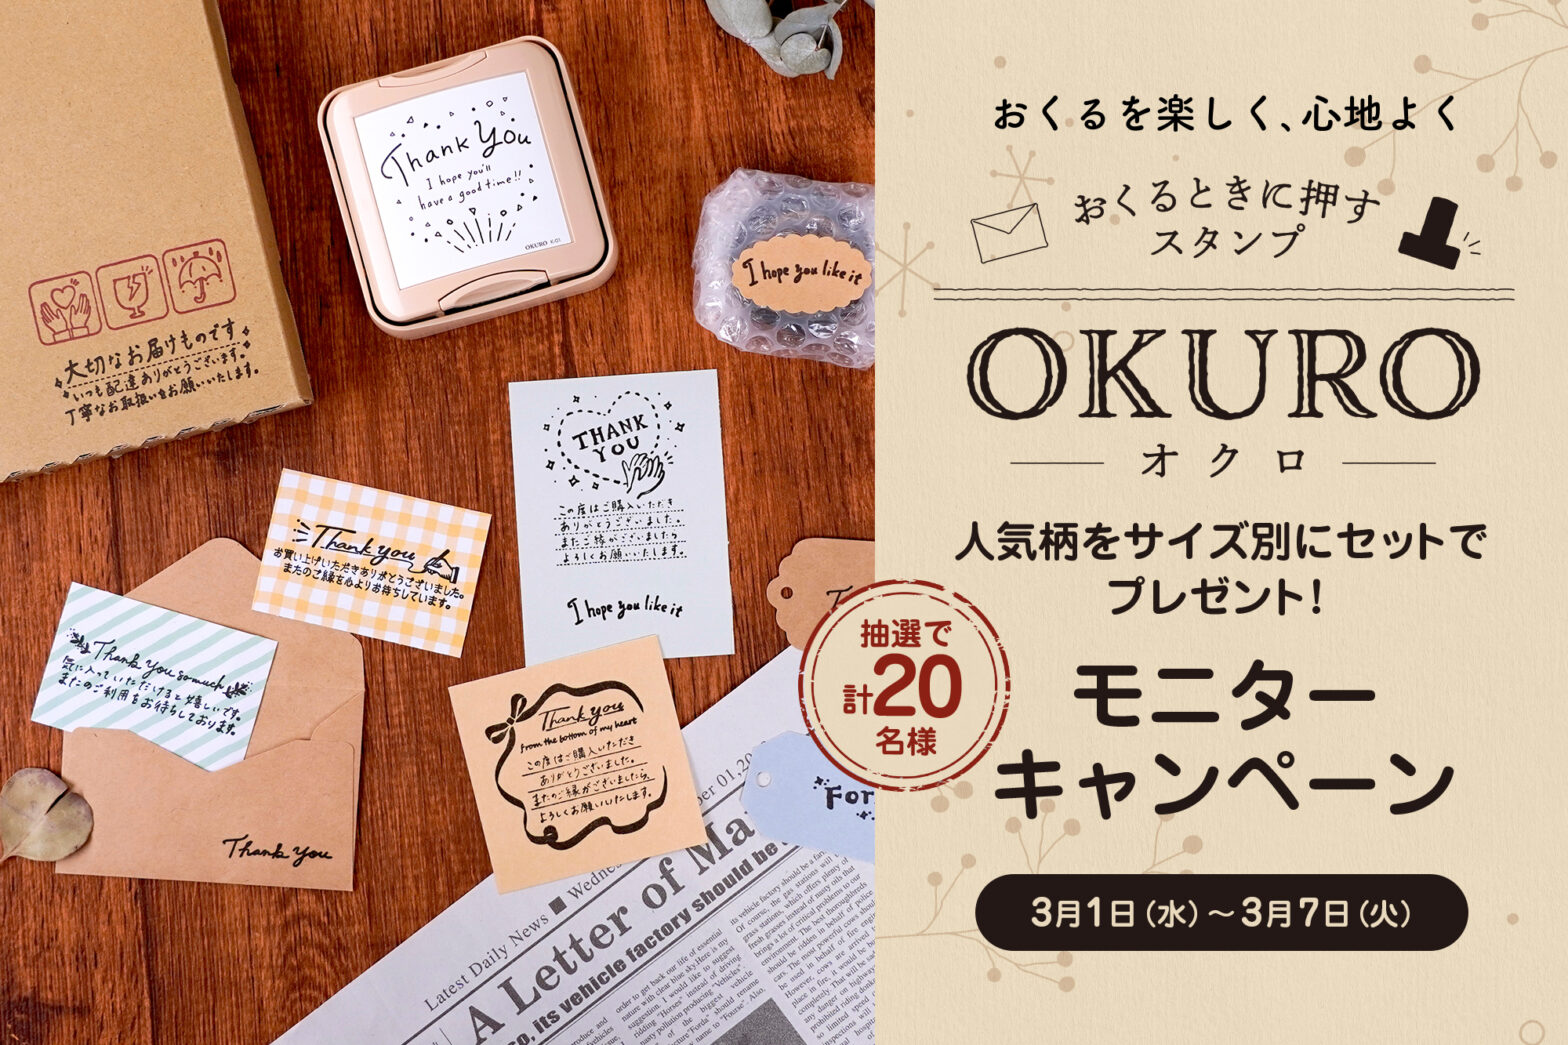 【おくるときに押すスタンプ「OKURO」】モニター募集キャンペーン